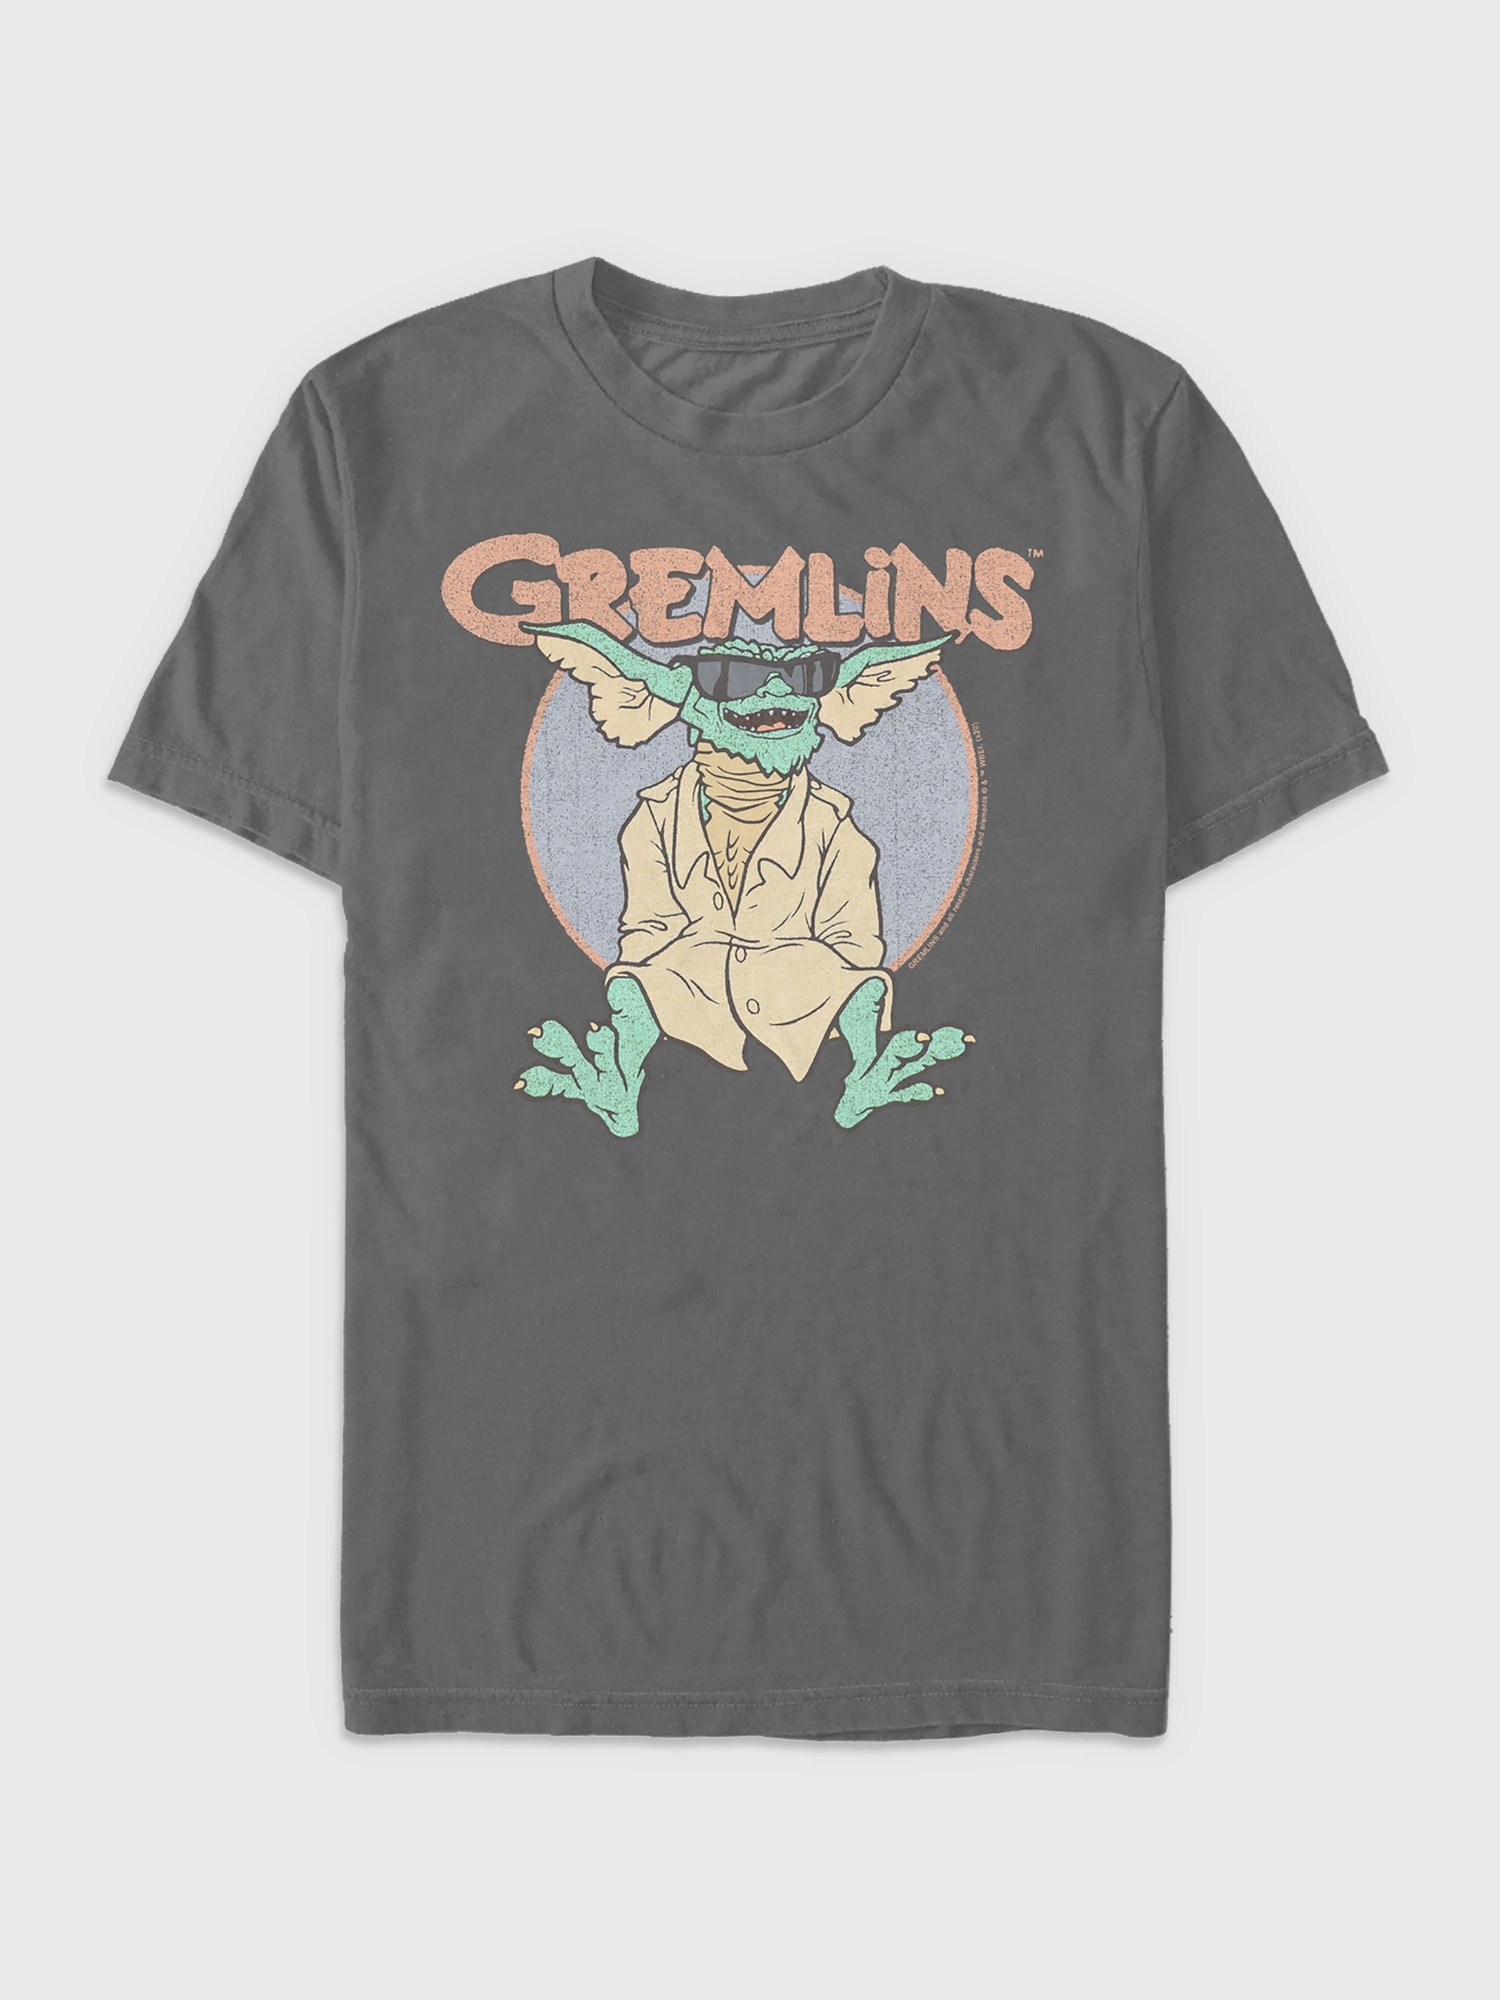 Gap Gremlins Graphic Tee